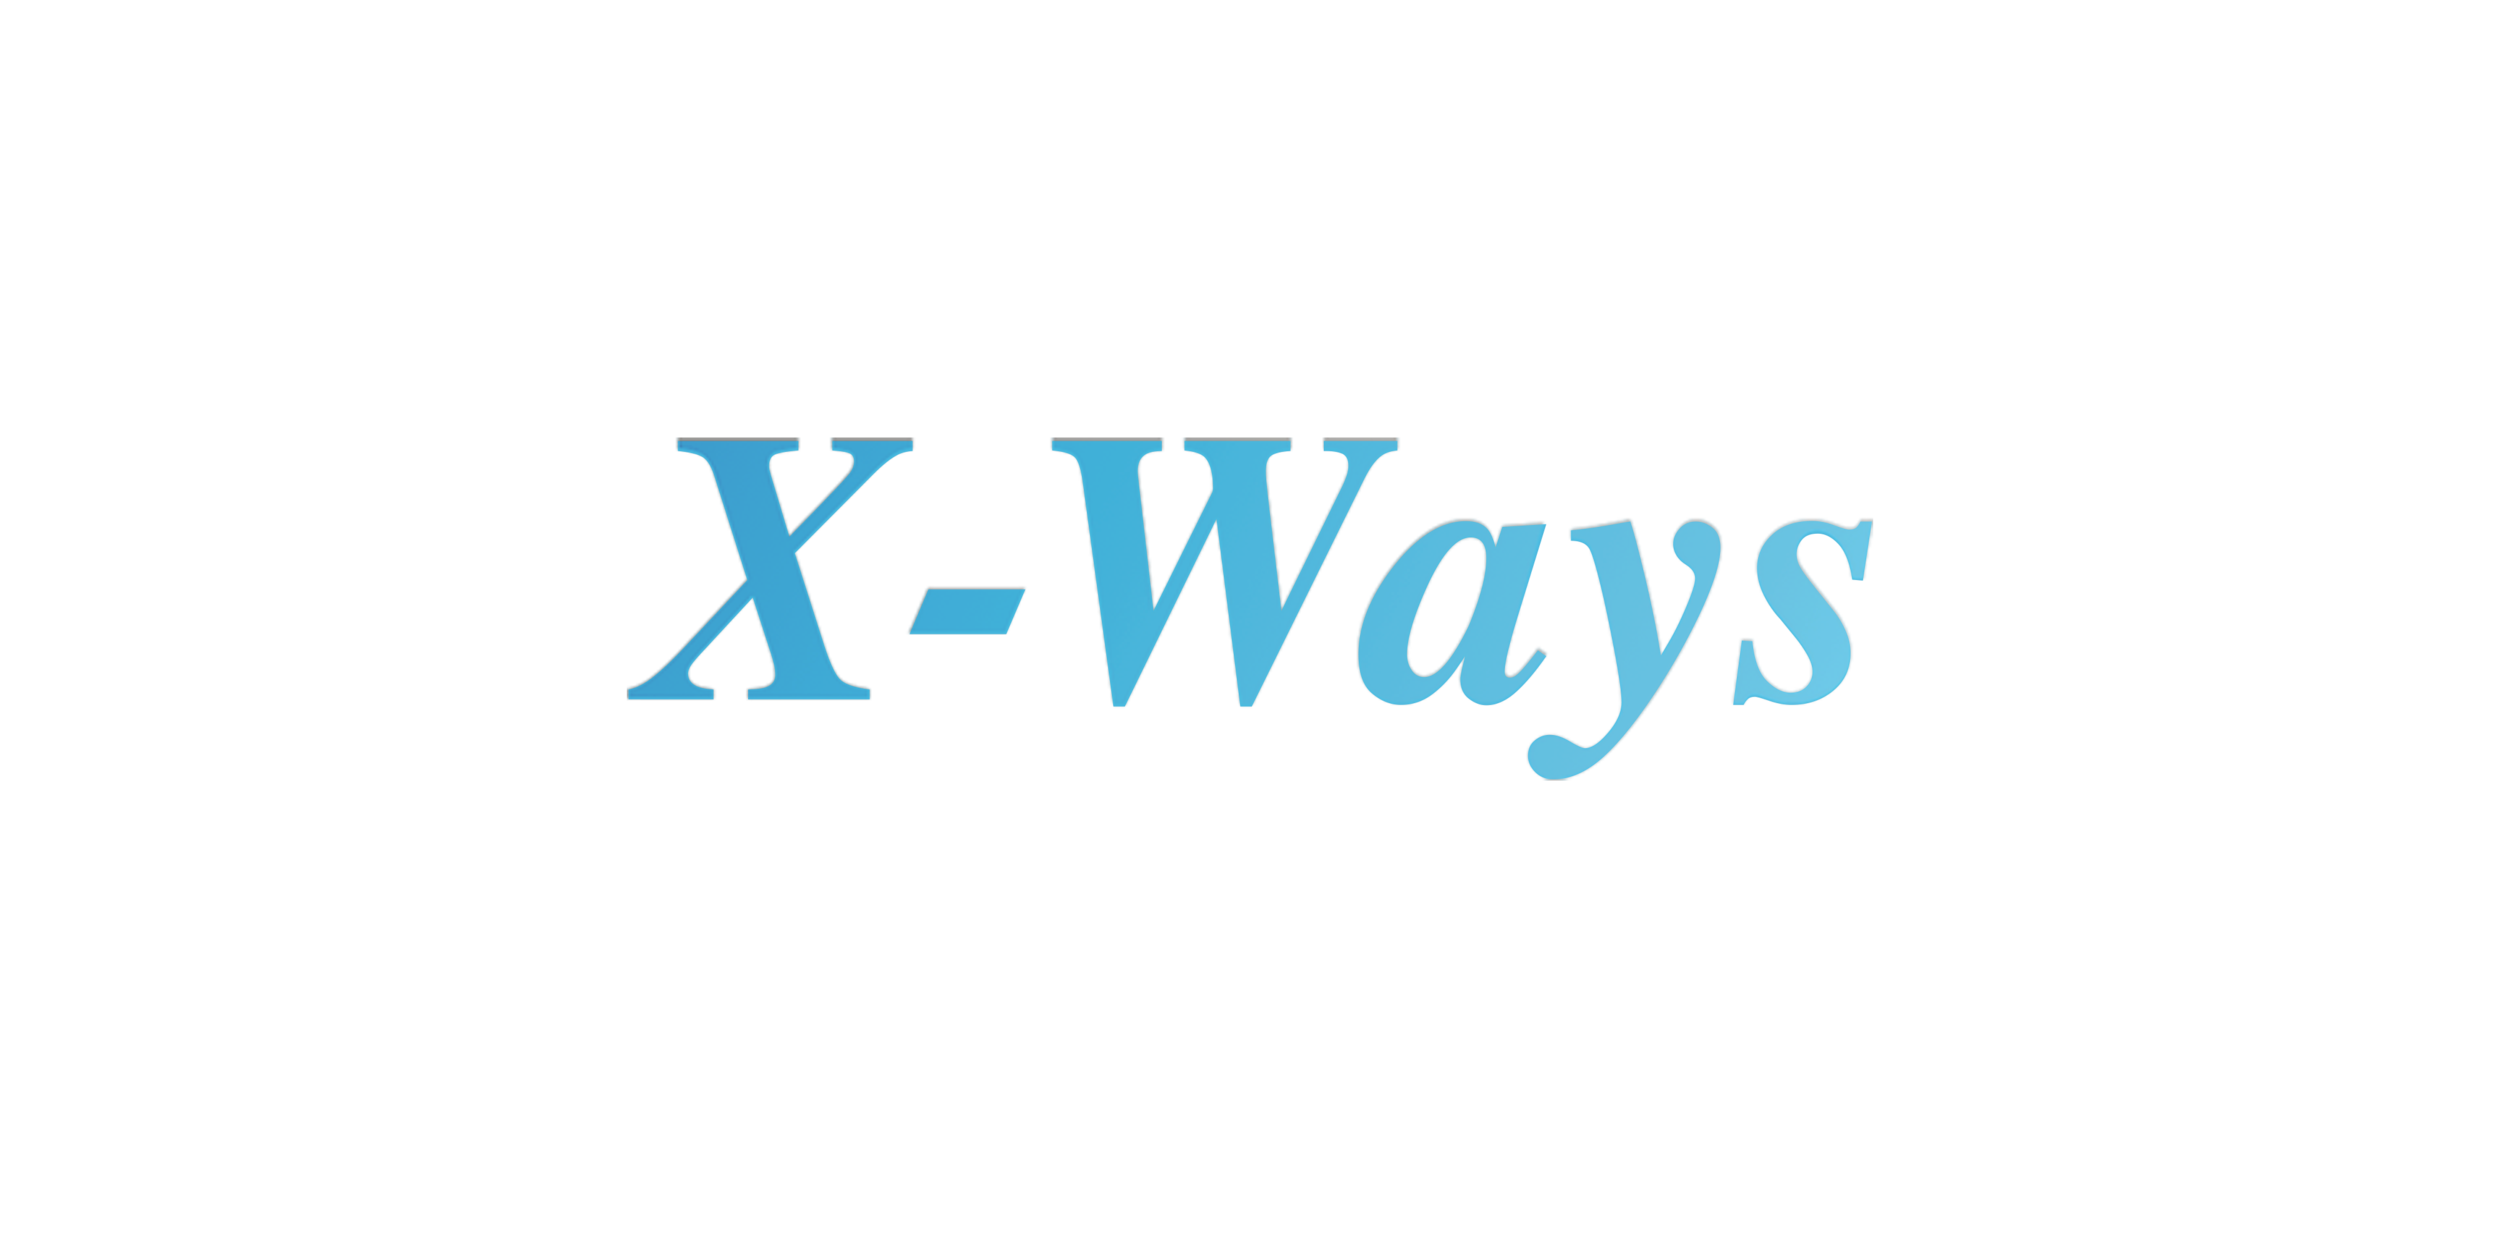 X-Ways est l'un des outils forensiques les plus utilisés en Europe